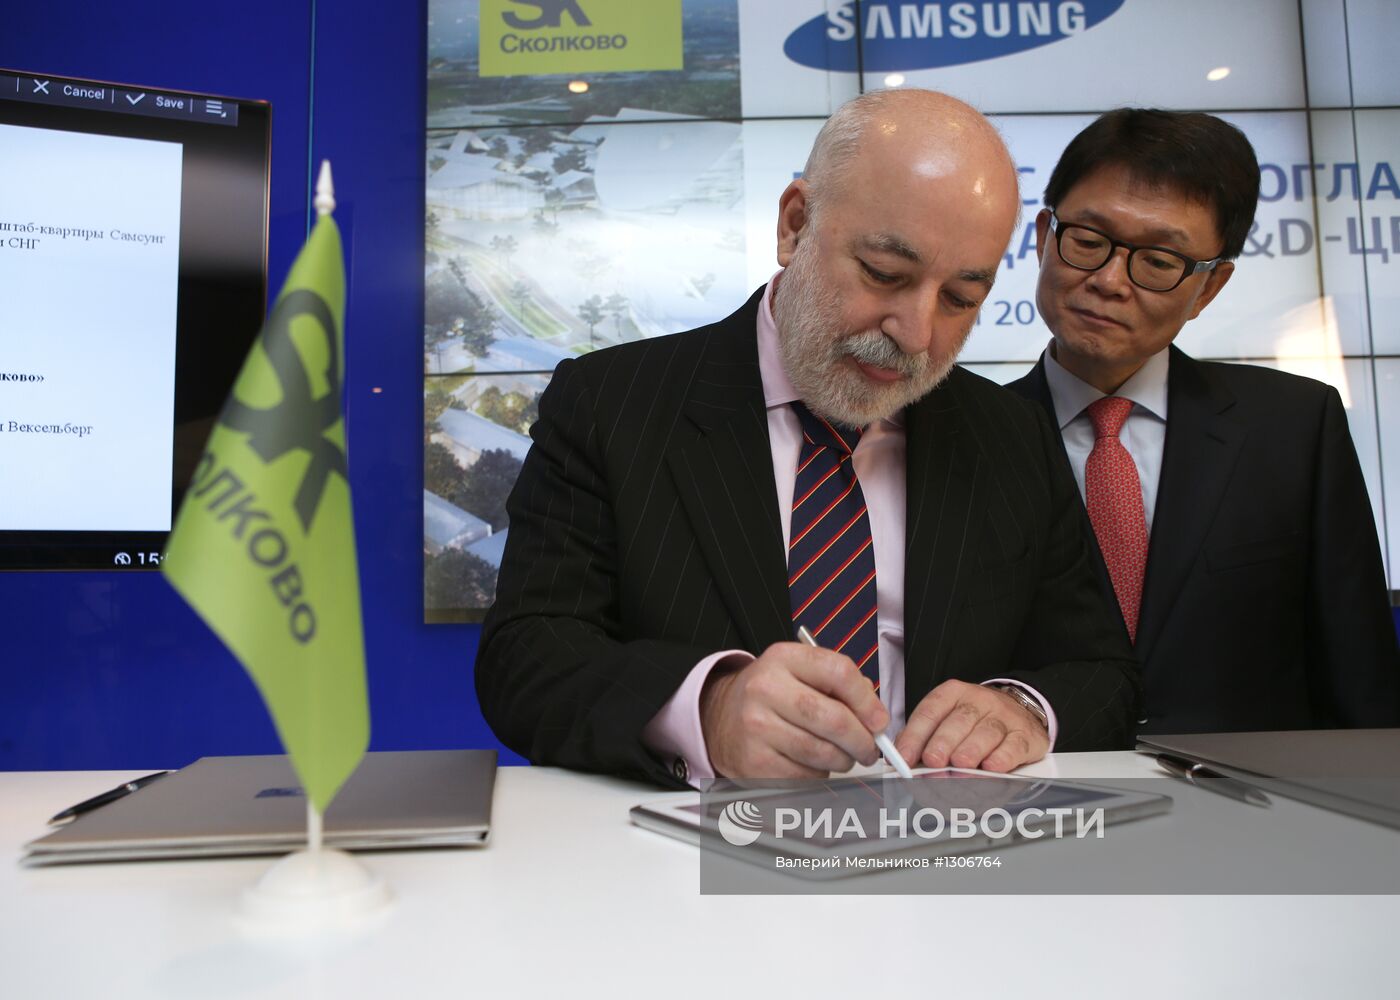 Подписание соглашения о создании центра Samsung в Сколково